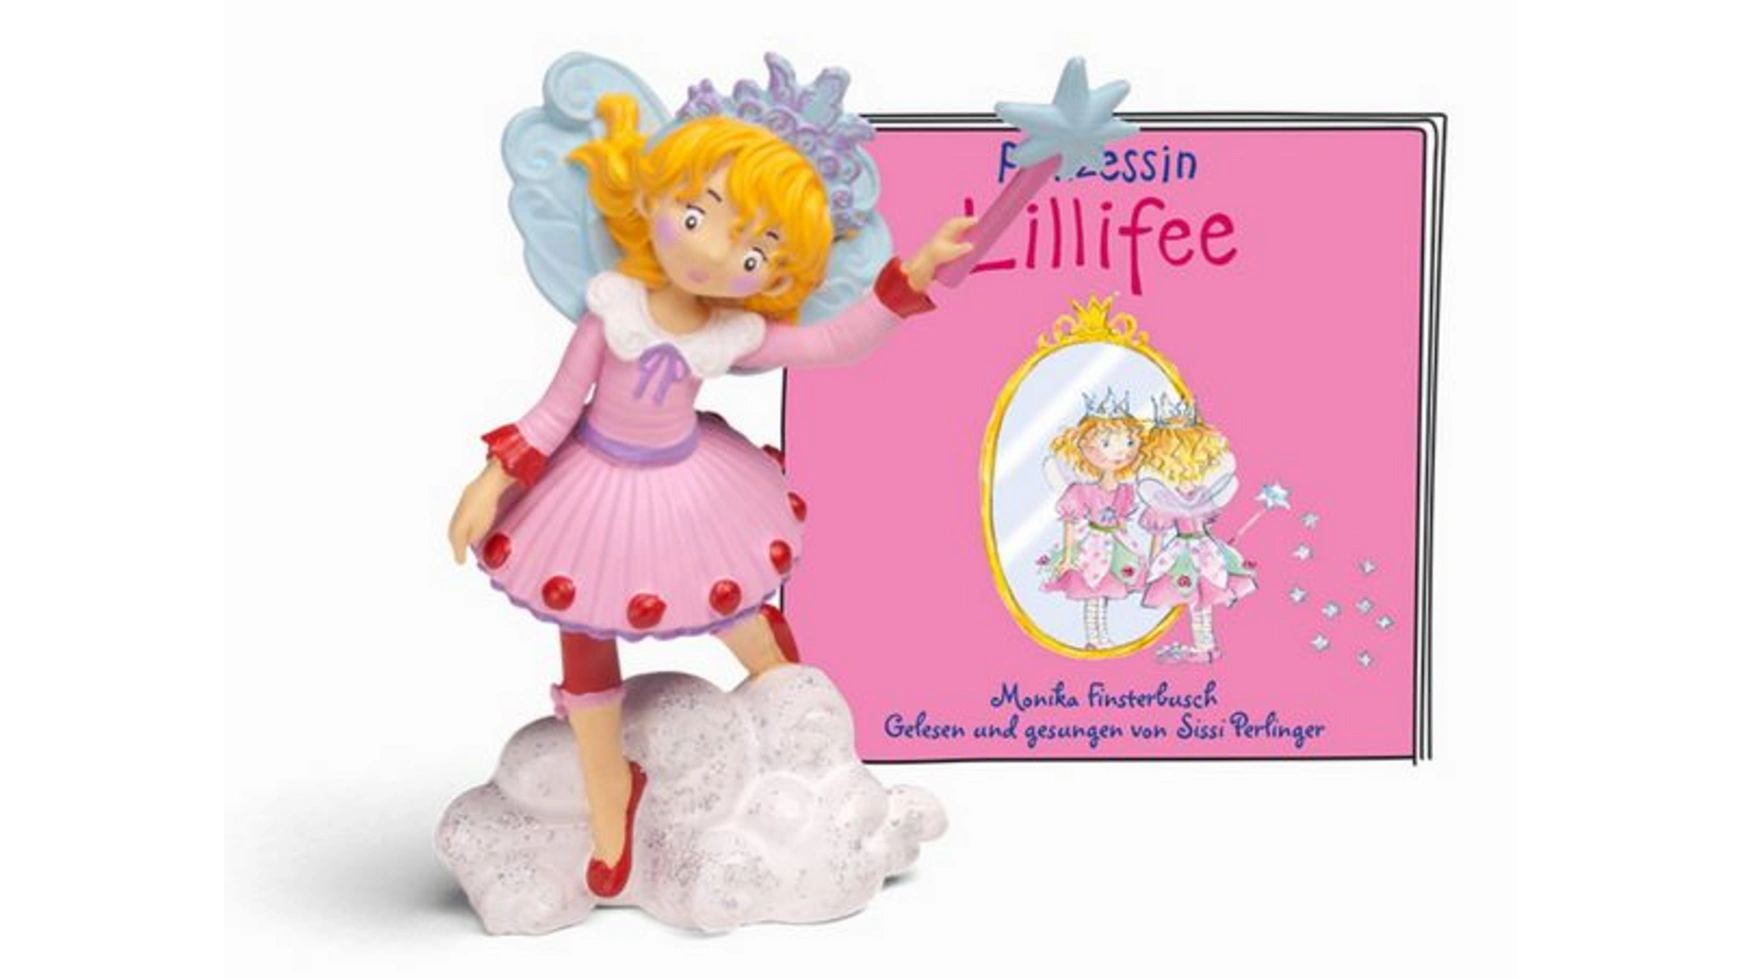 Слуховая фигурка для toniebox: принцесса лиллифе Tonies шар фольгированный 36 фигура принцесса золушка бальное платье